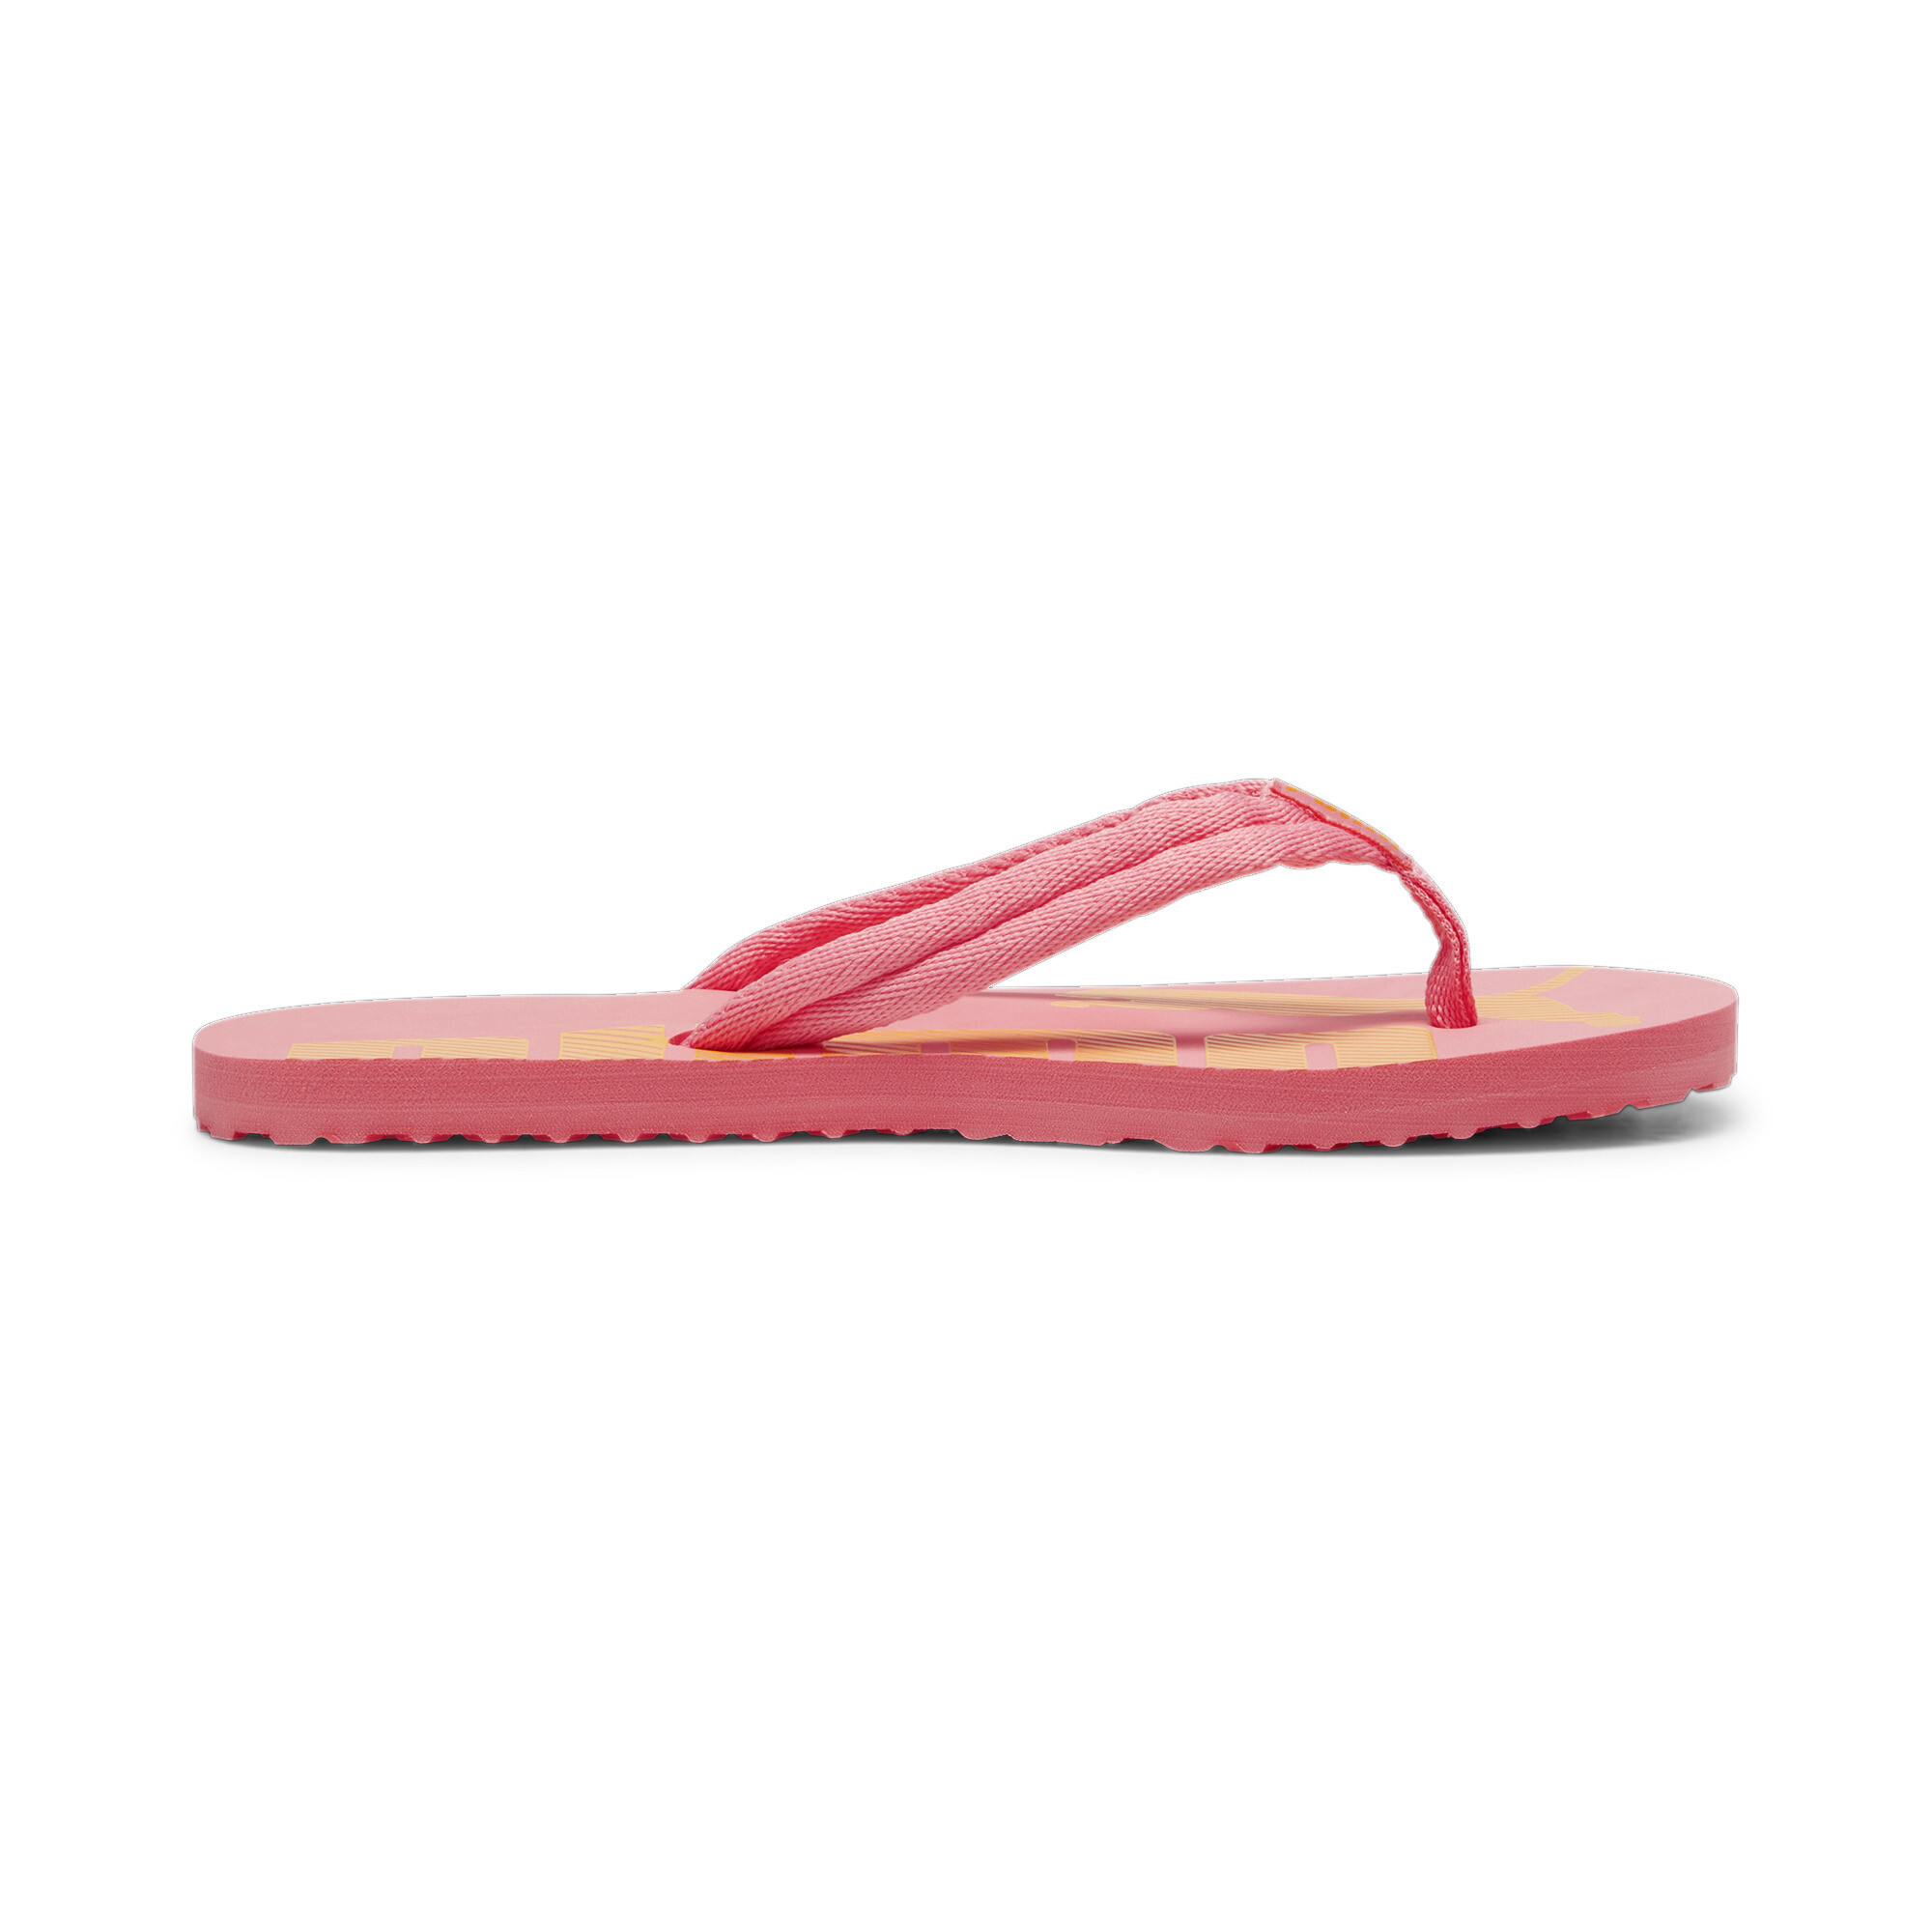 Men's PUMA Epic Flip V2 Sandals In Pink, Size EU 43